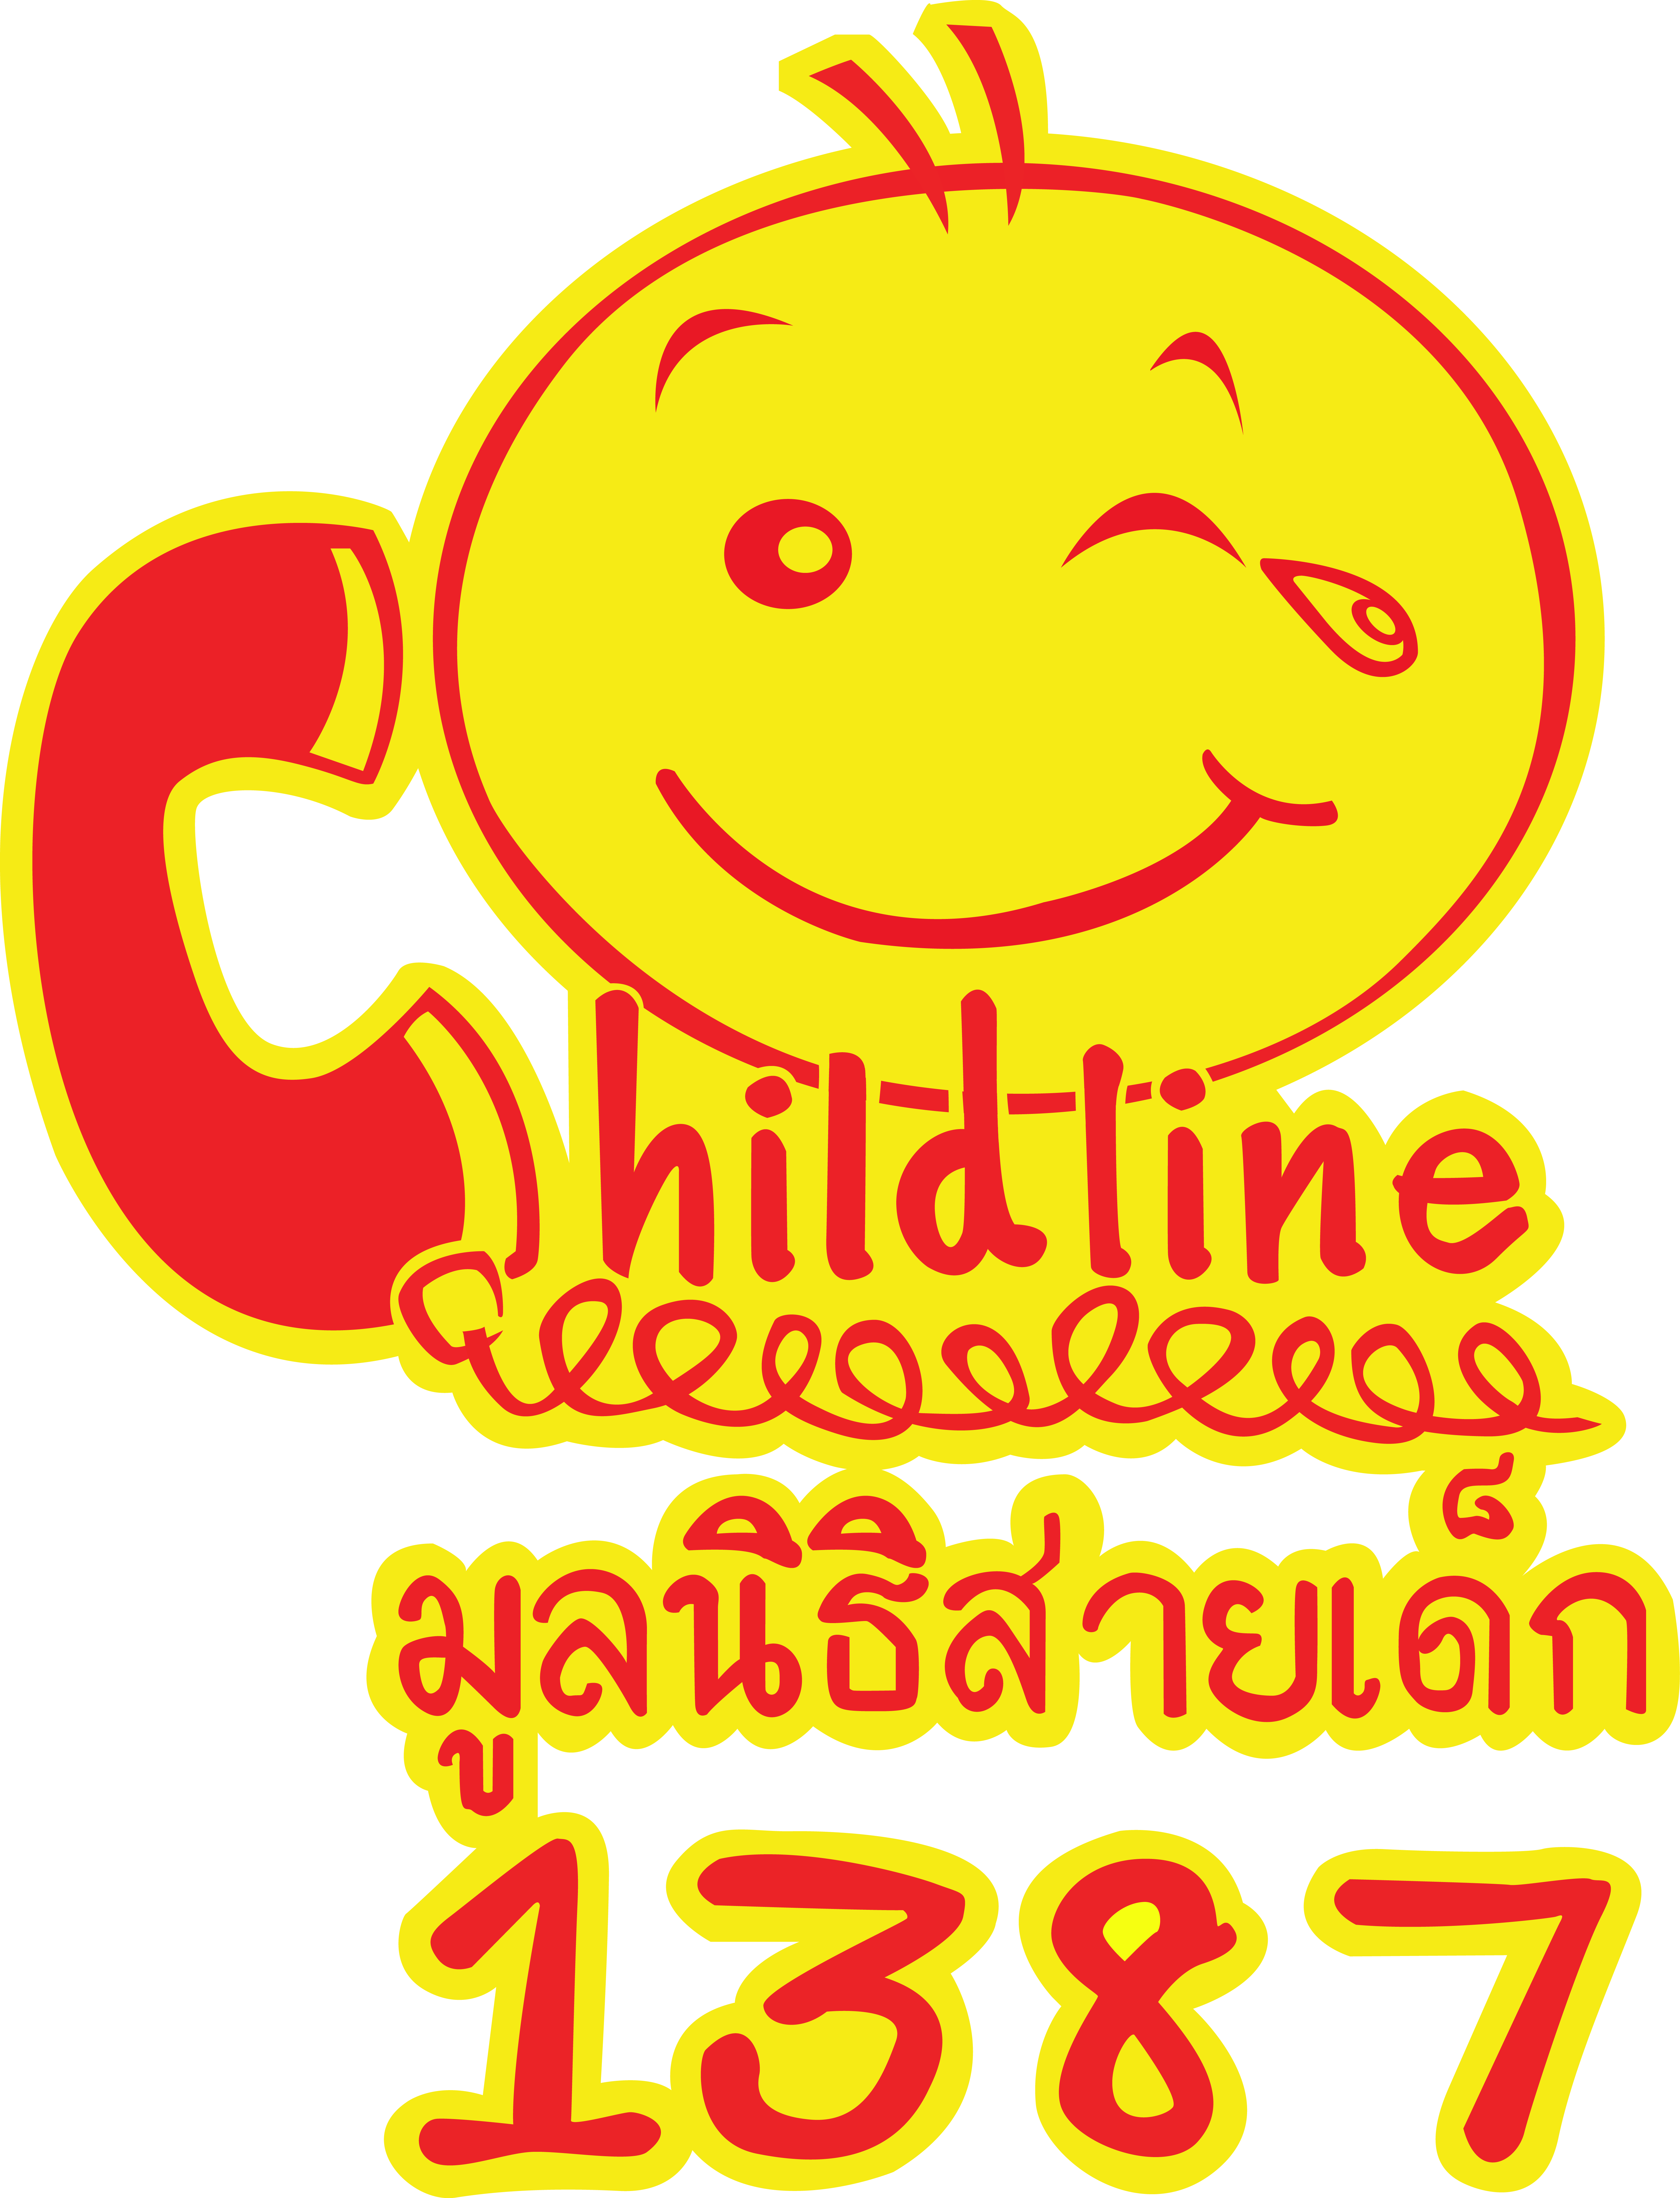 Childline Thailand